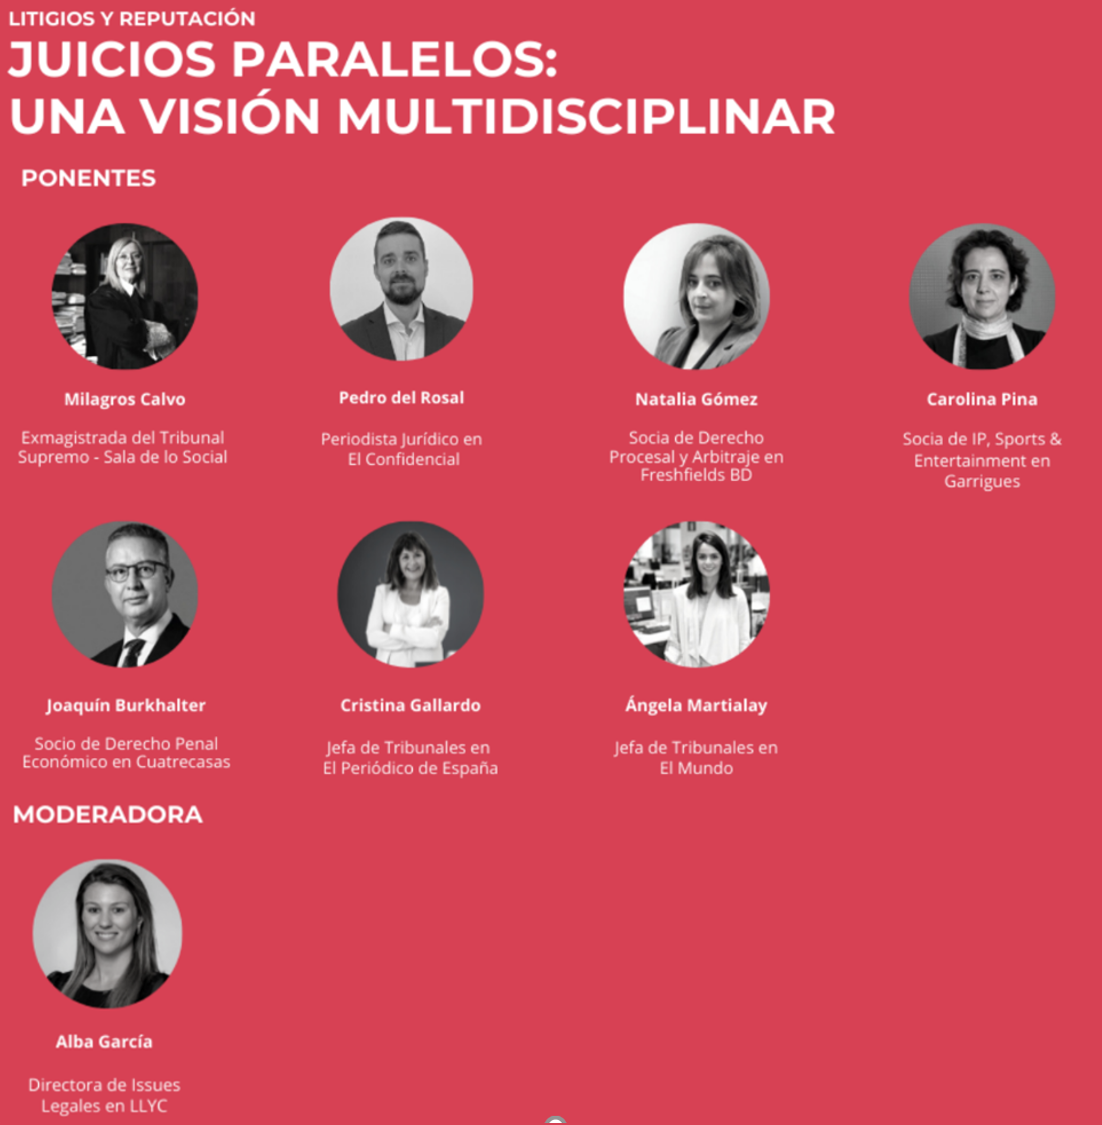 Juicios Paralelos: una visión multidisciplinarJuicios Paralelos: una visión multidisciplinar